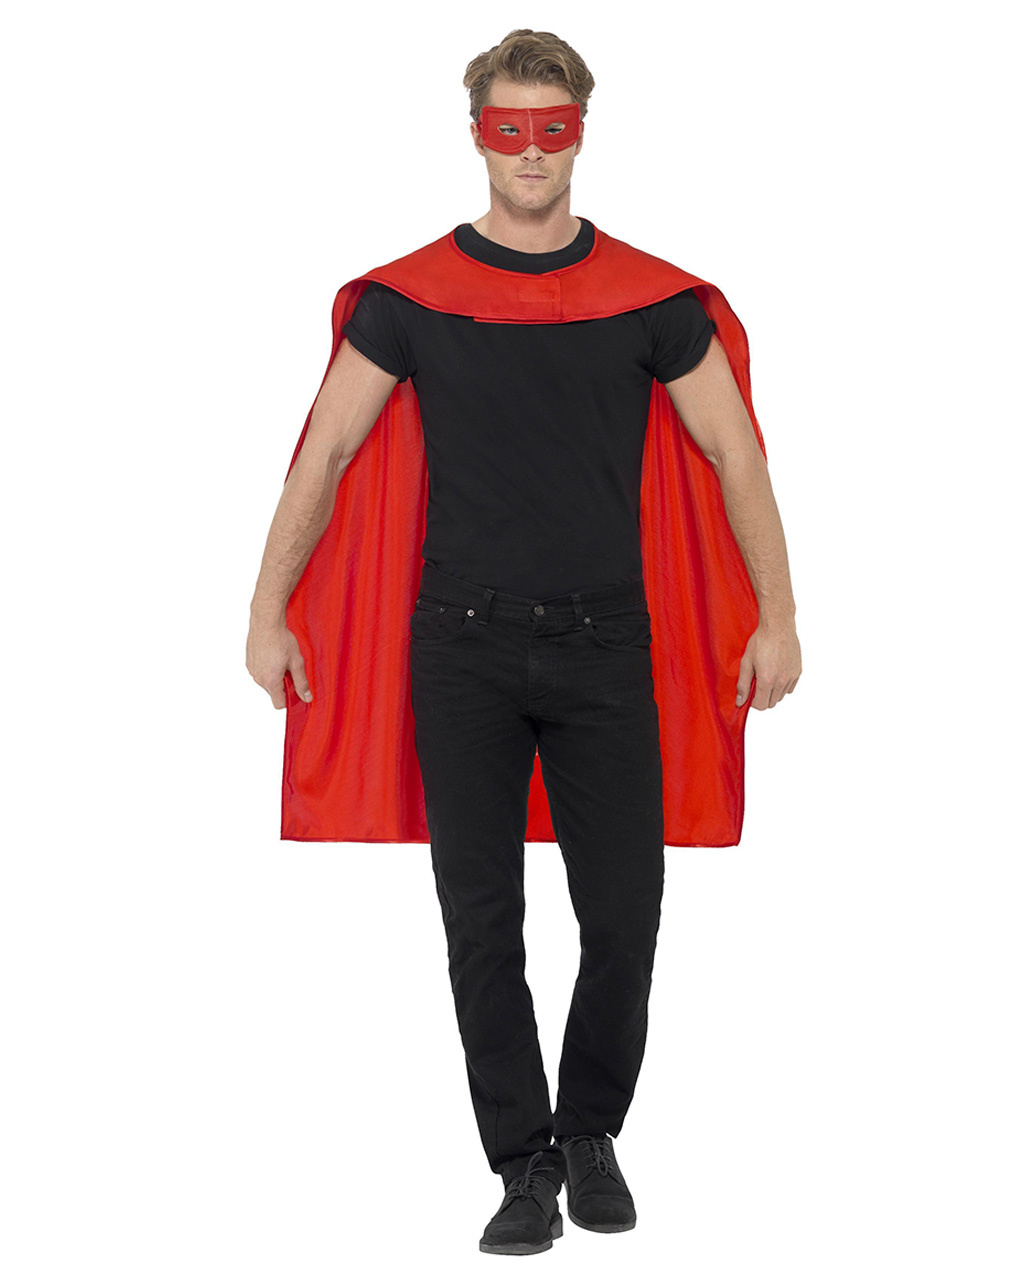 Umhang mit Maske Superhelden Kostüm Superheld Cape mit Augenmaske Superman